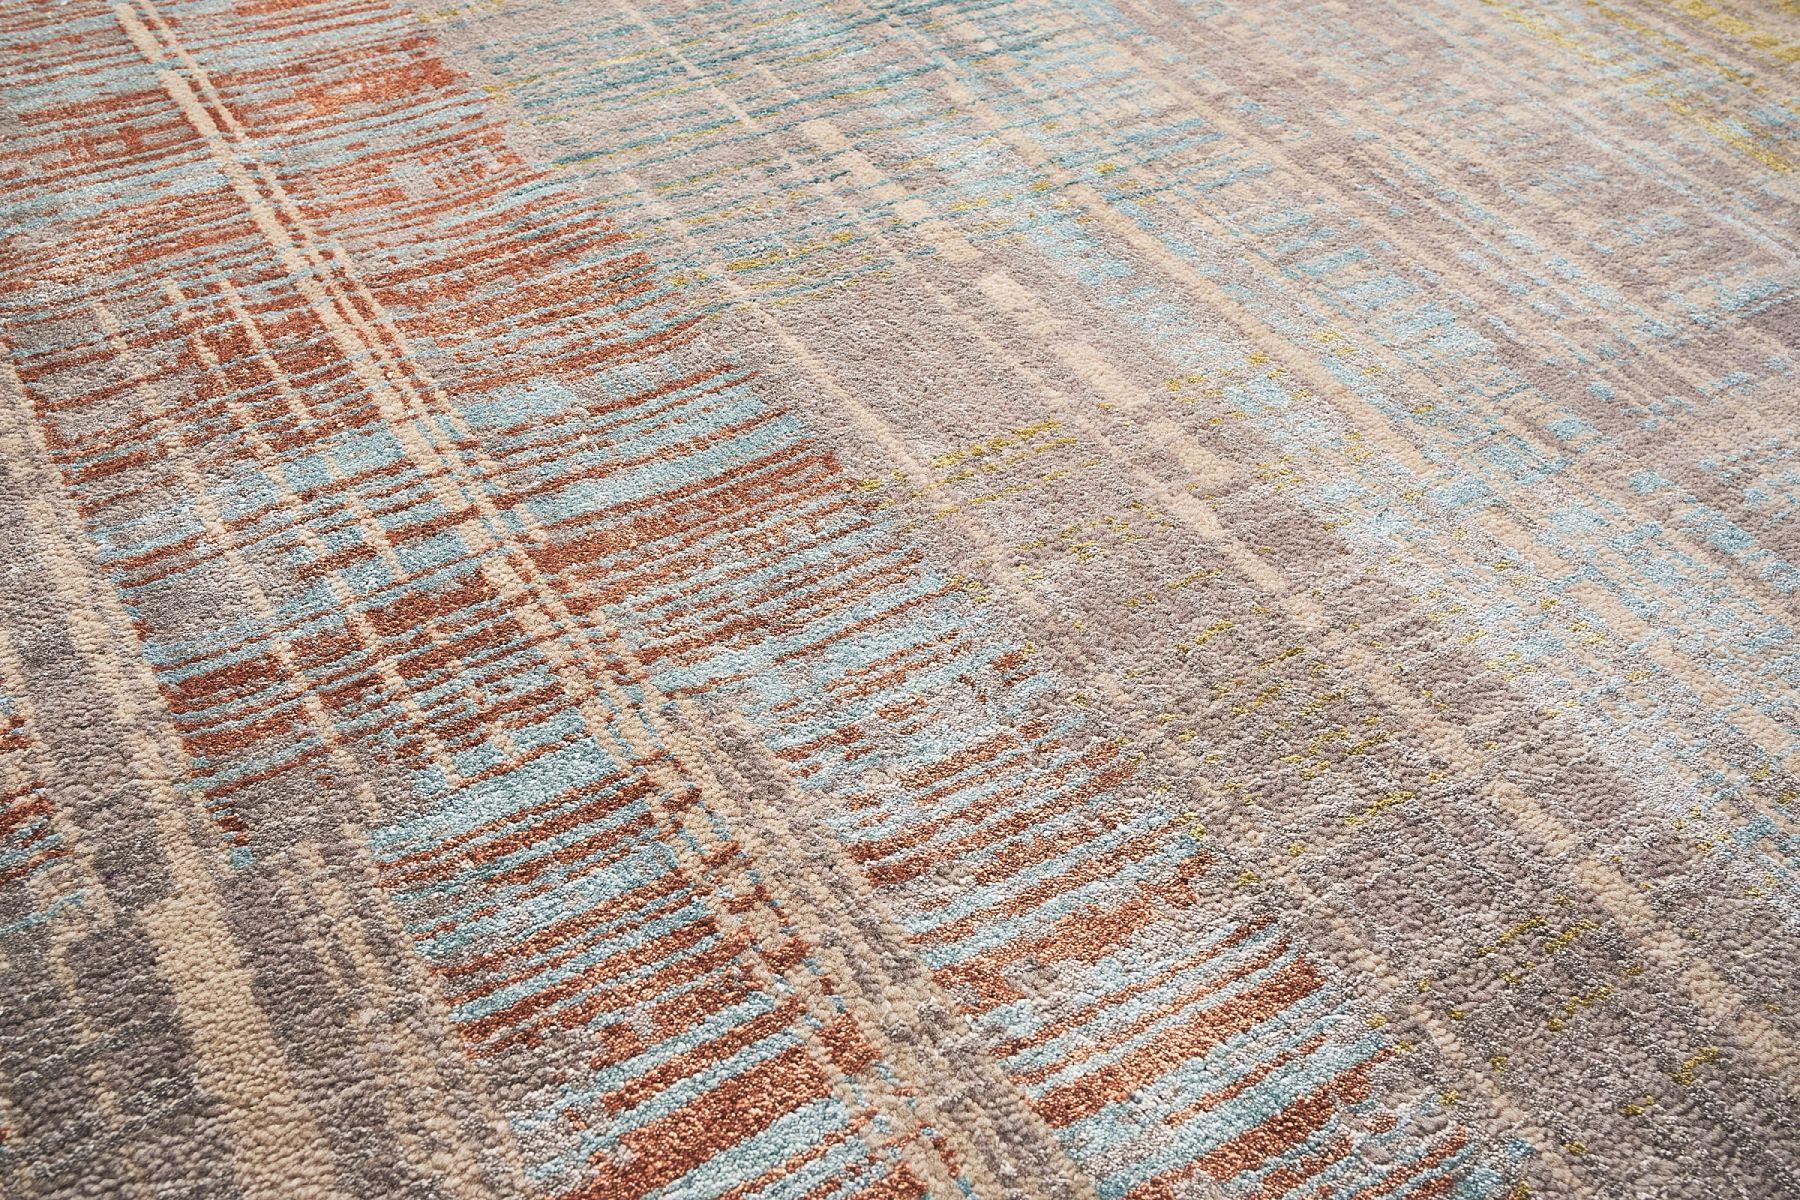 Un magnifique tapis coloré du motif Intersections, réalisé dans les années 2000. Le tapis est fait de laine et de soie nouées à la main et magnifiquement visibles. Ce qui rend ce tapis unique, c'est son entrelacement de couleurs, qui lui permet de